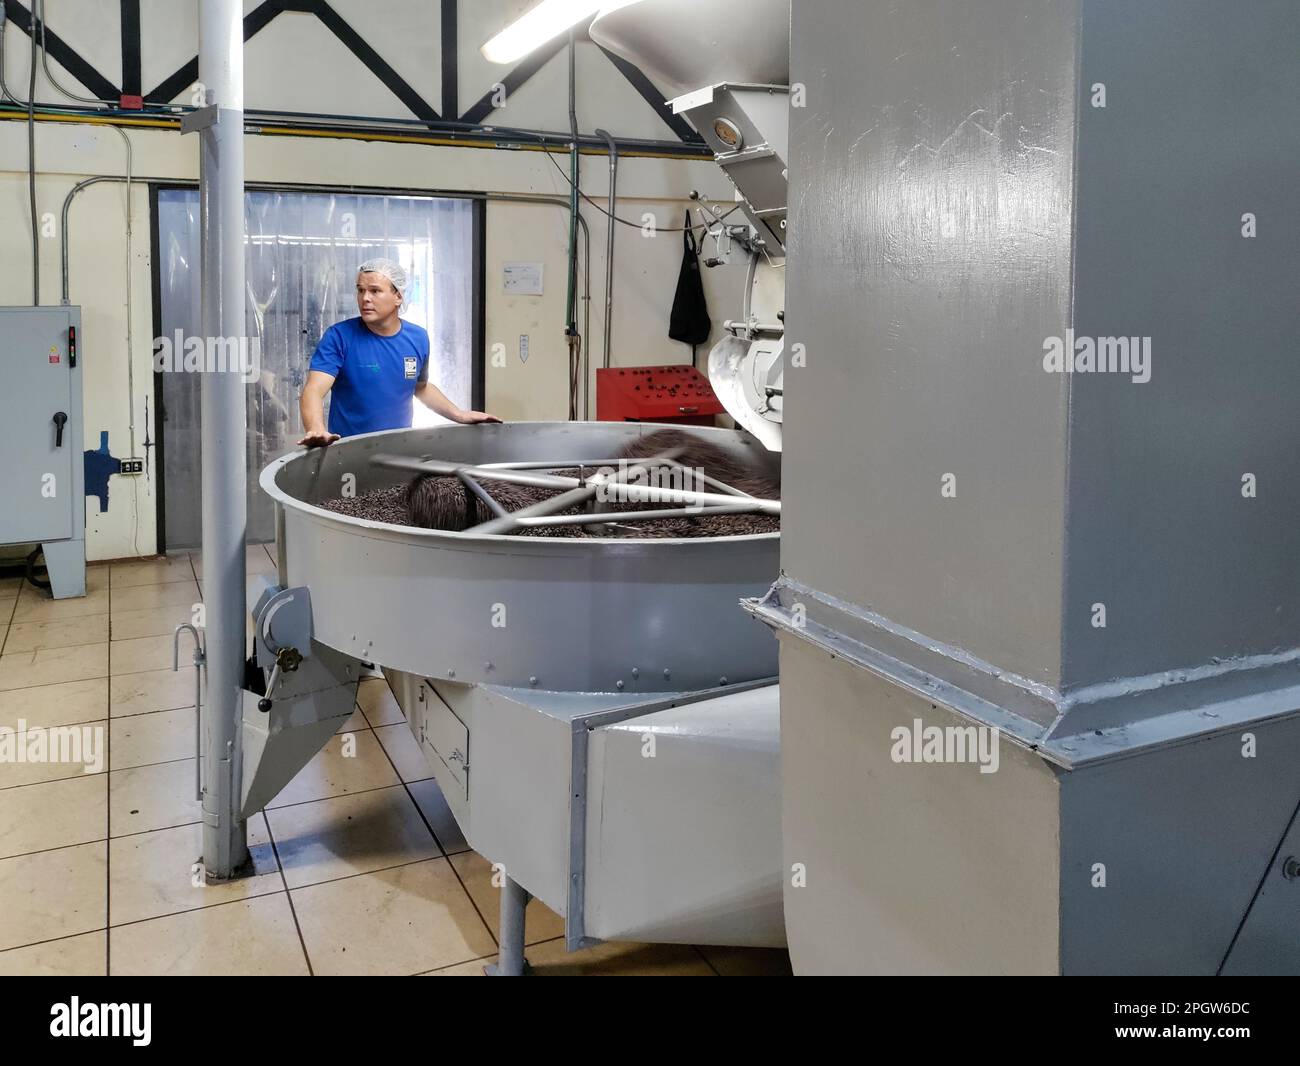 Naranjo, Costa Rica - Un operaio sovrintende alla torrefazione dei chicchi di caffè presso la fattoria e l'impianto di lavorazione del caffè Espiritu Santo. Foto Stock